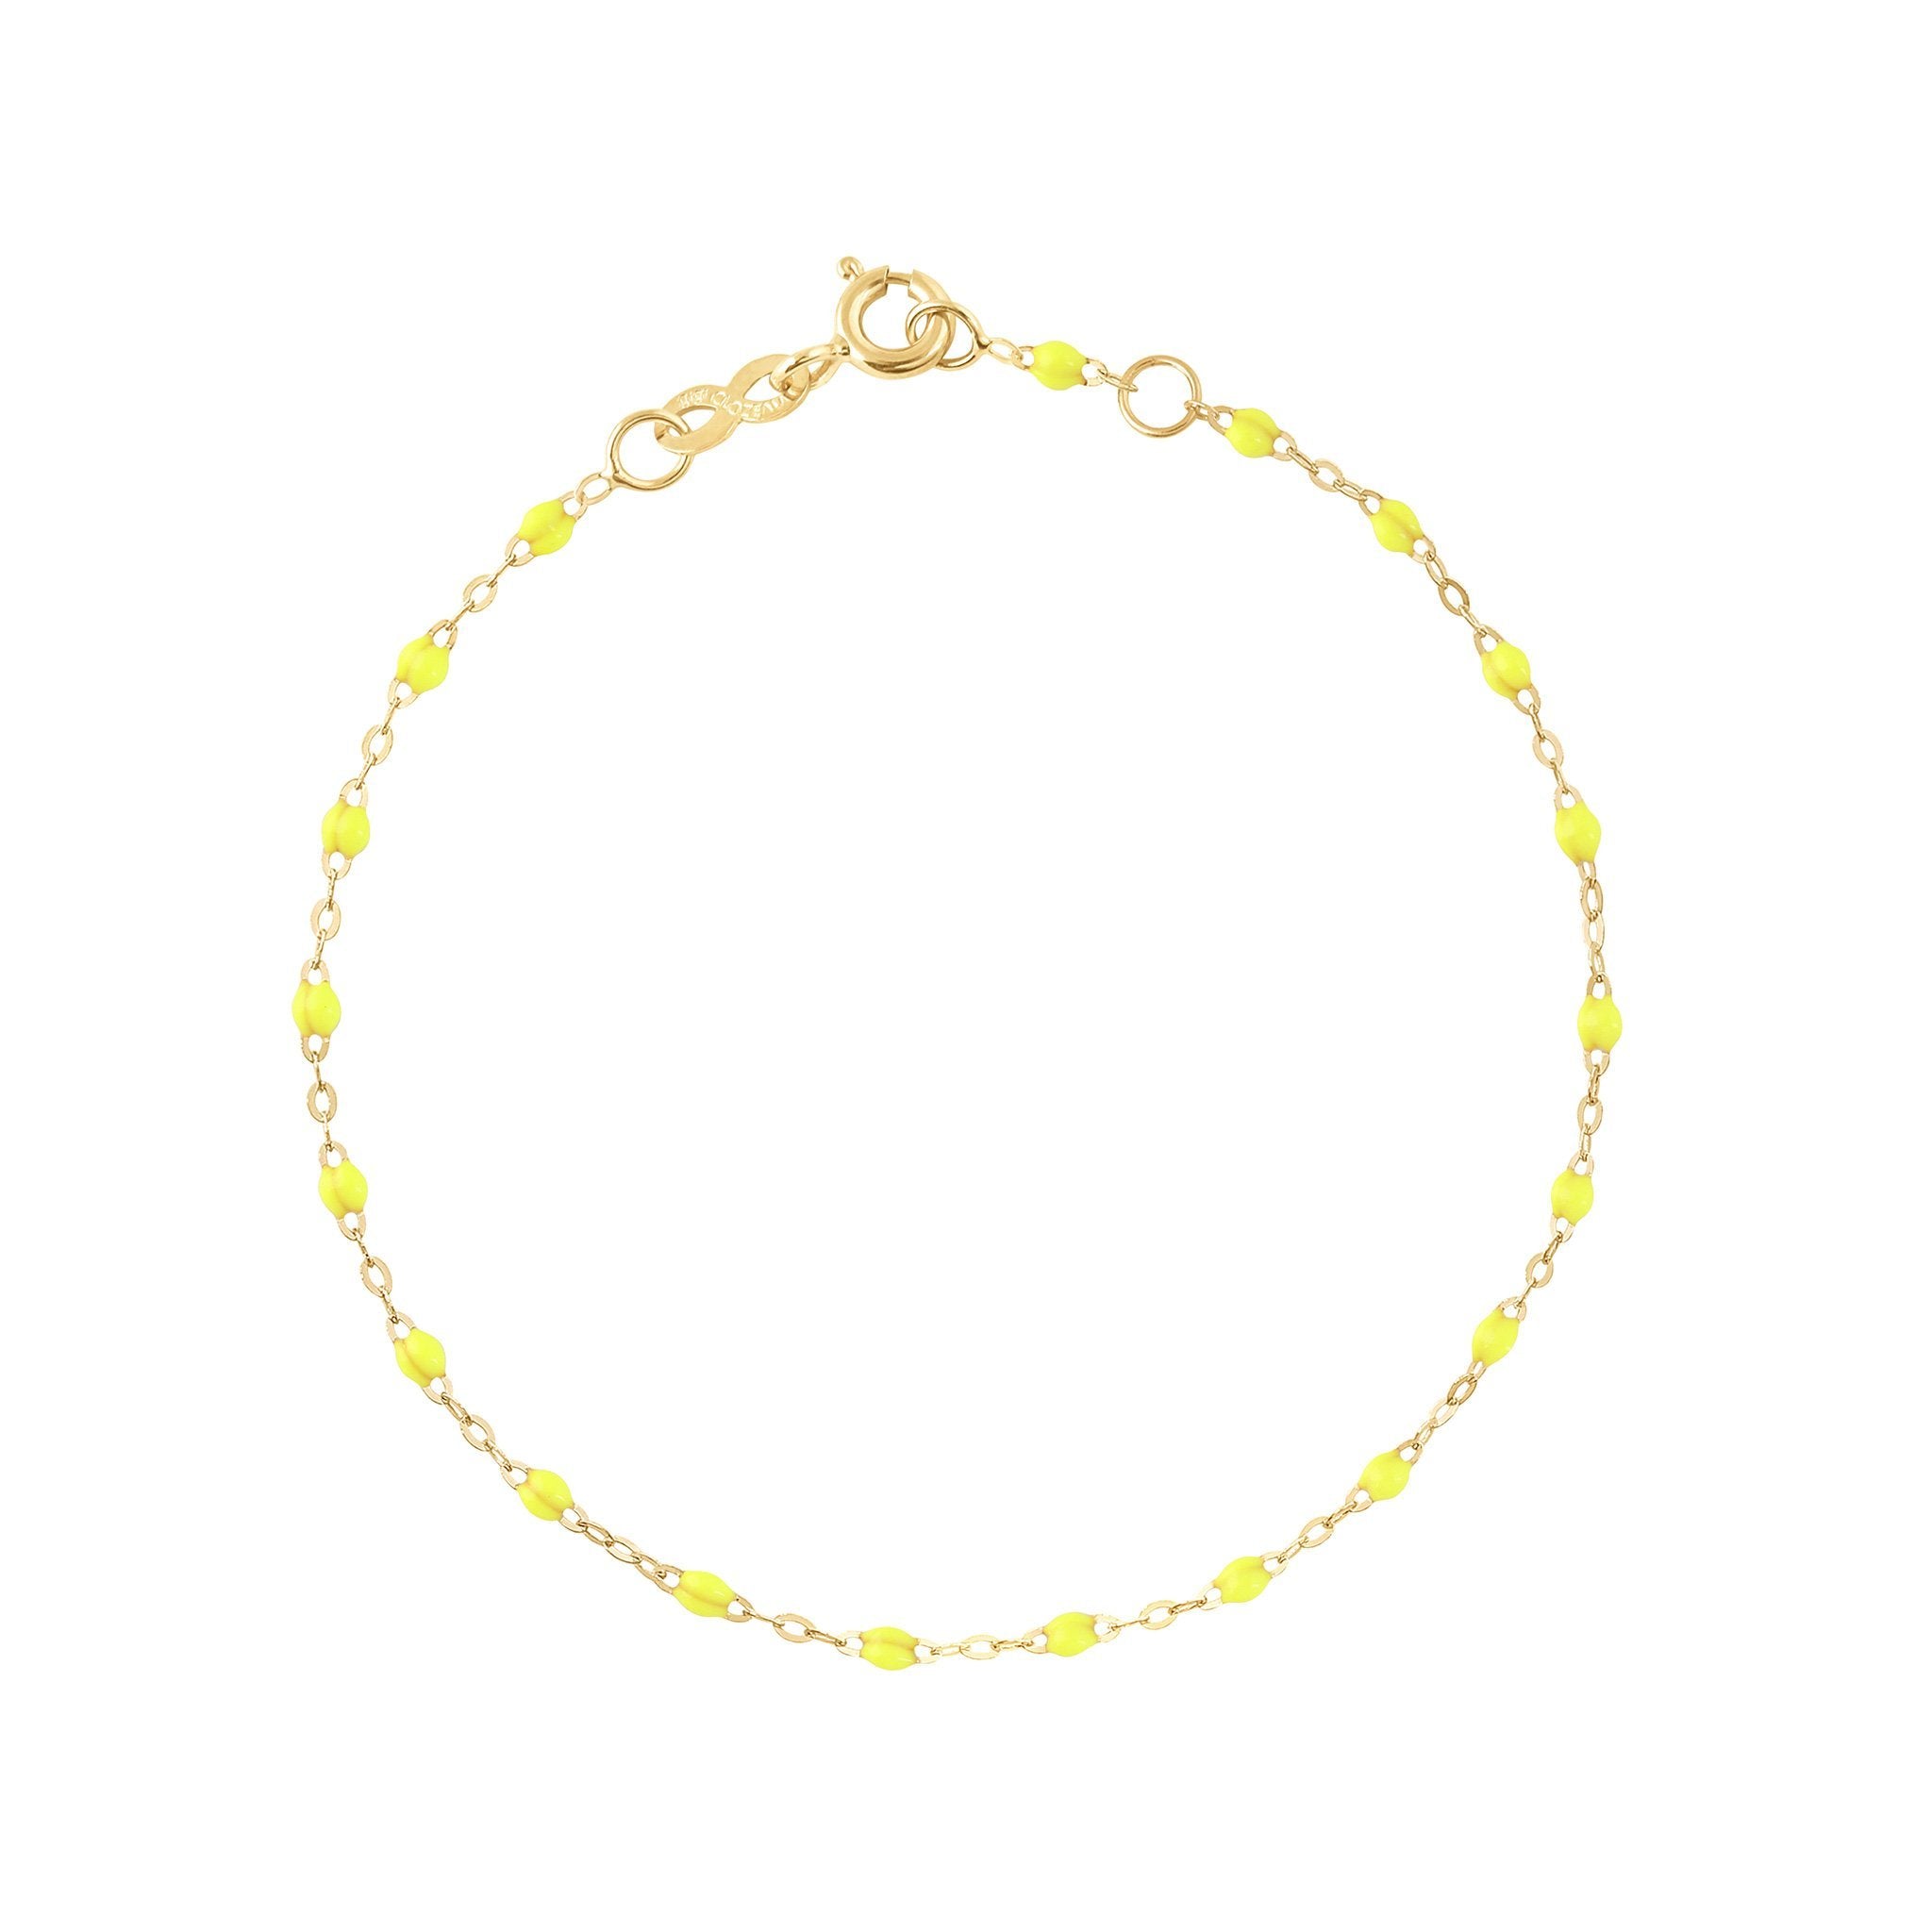 Bracelet jaune fluo Classique Gigi, or jaune, 15 cm classique gigi Référence :  b3gi001j1815xx -1